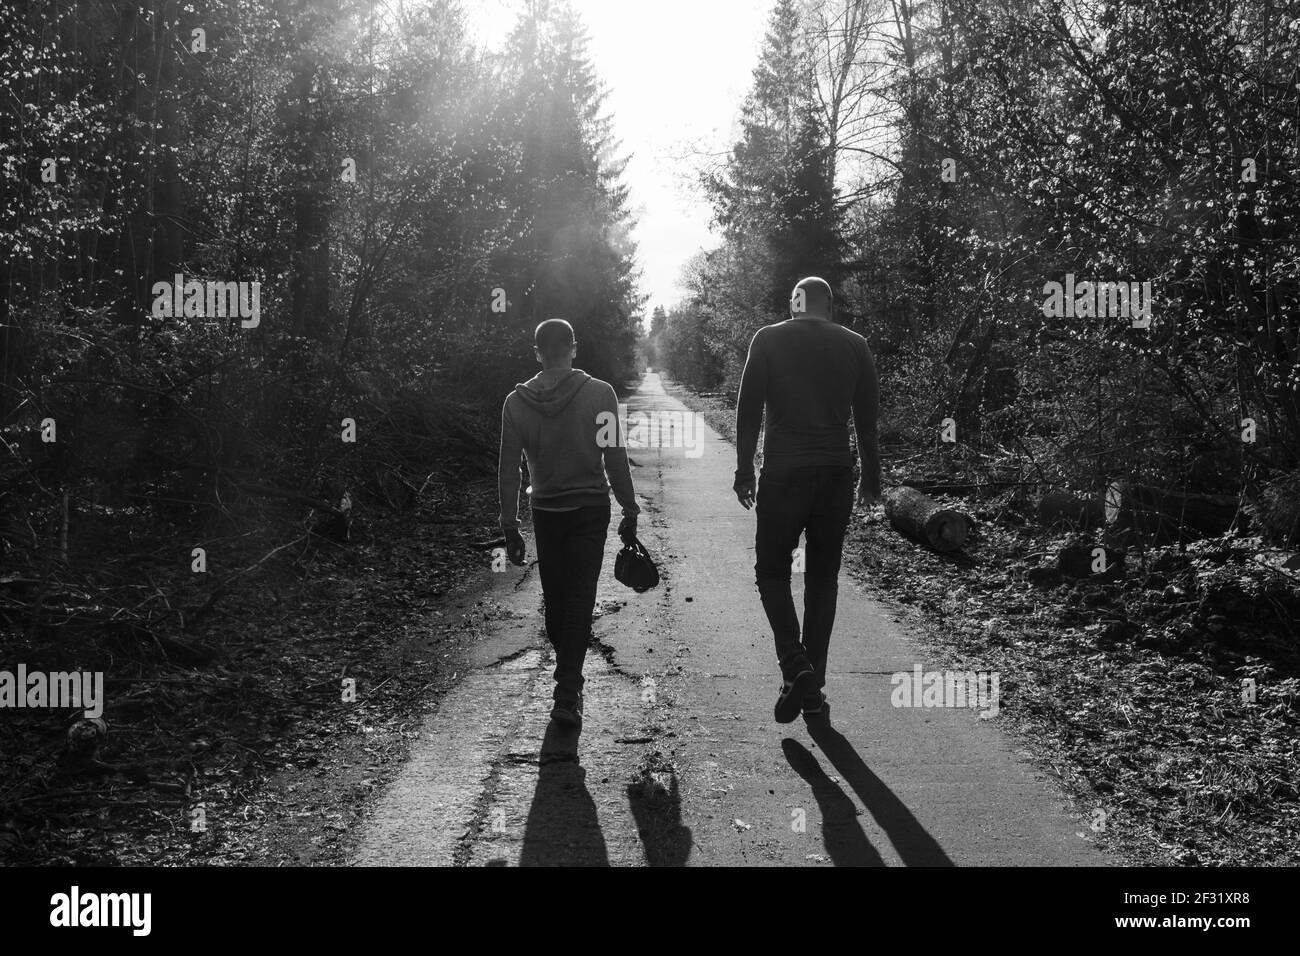 Dos amigos están caminando a lo largo del callejón, humor triste, ambiente de pelea o resentimiento; foto en blanco y negro Foto de stock